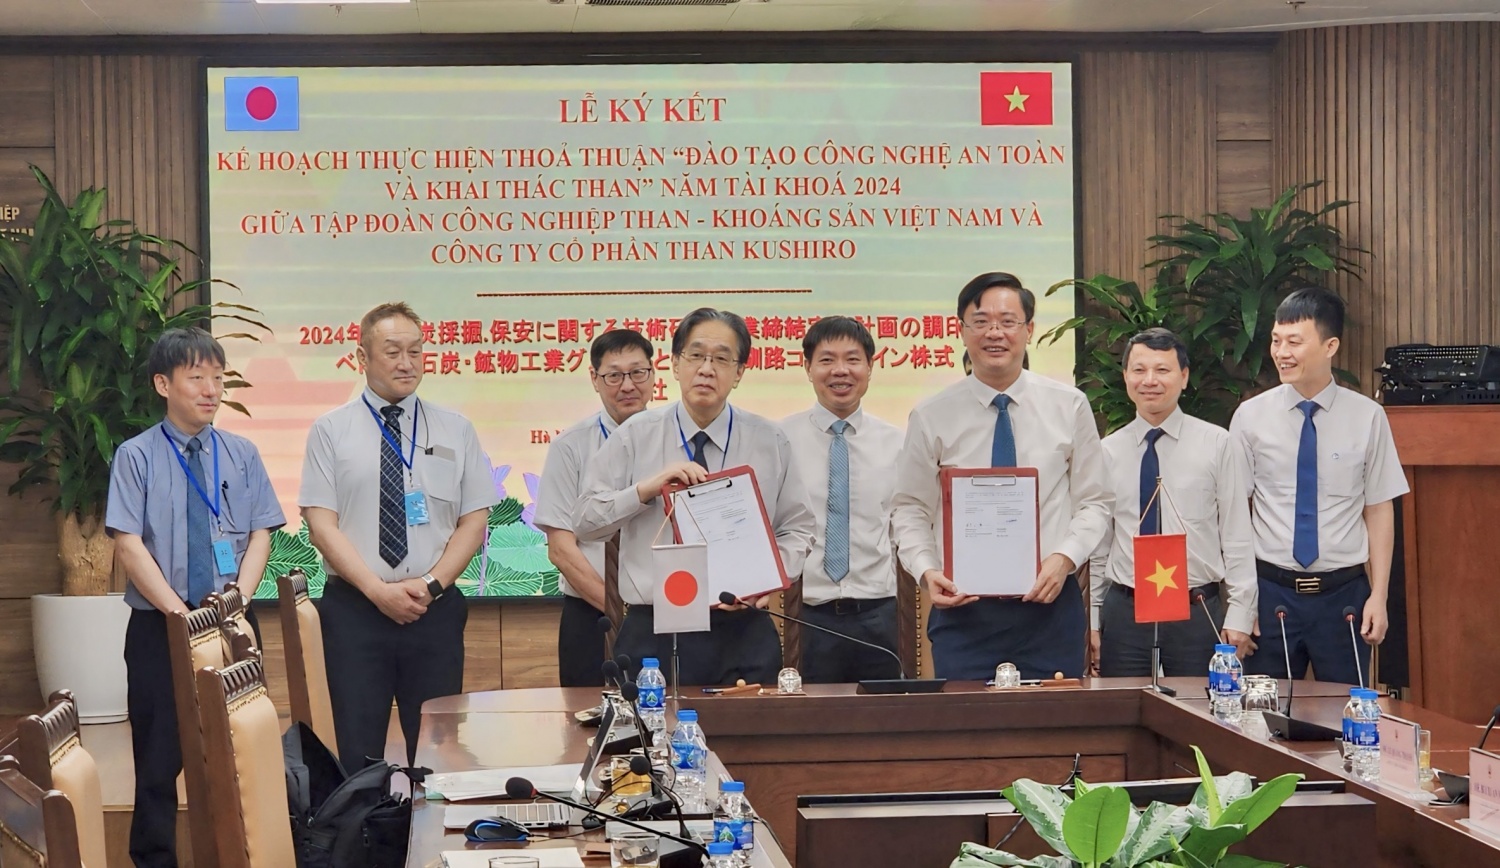 TKV và Kushiro ký kết thỏa thuận "Đào tạo công nghệ an toàn và khai thác than"